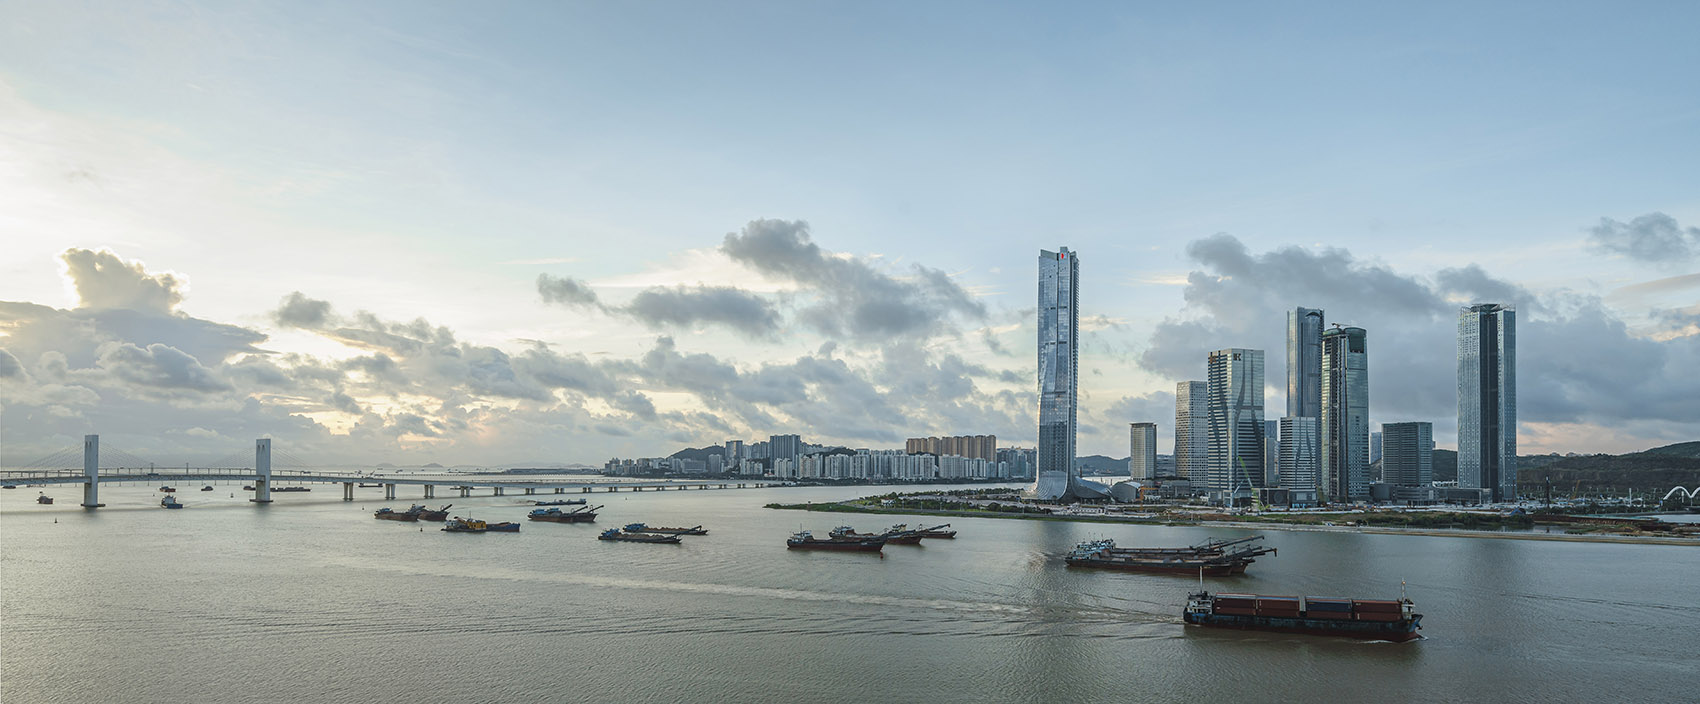 横琴国际金融中心，珠海/珠澳第一高楼，以蛟龙出海打造中国新力量-11